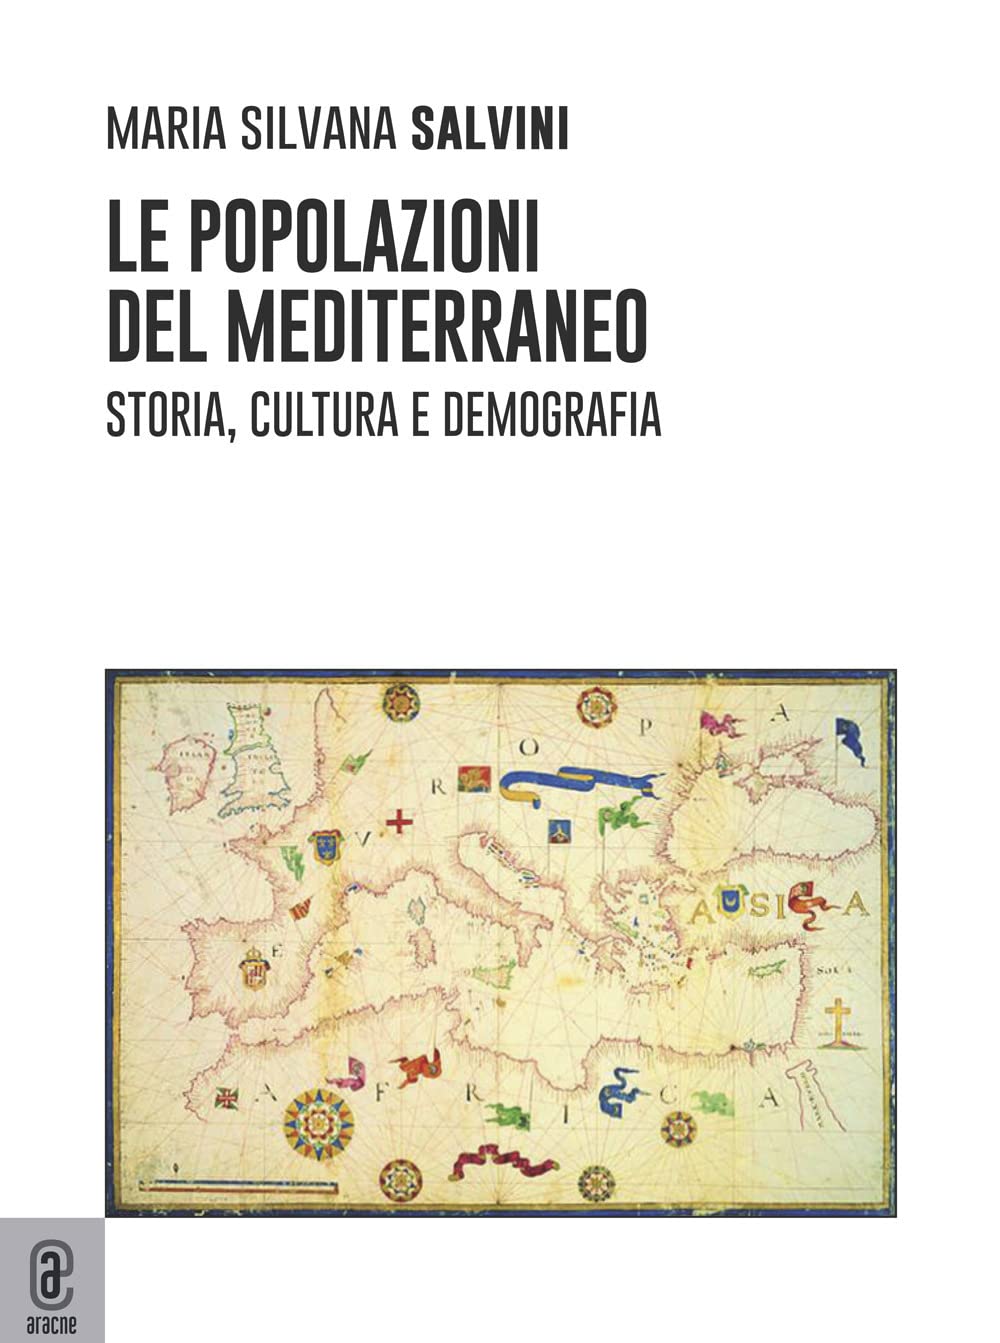 Libri Salvini Maria Silvana - Le Popolazioni Del Mediterraneo. Storia, Cultura E Demografia NUOVO SIGILLATO, EDIZIONE DEL 03/01/2023 SUBITO DISPONIBILE